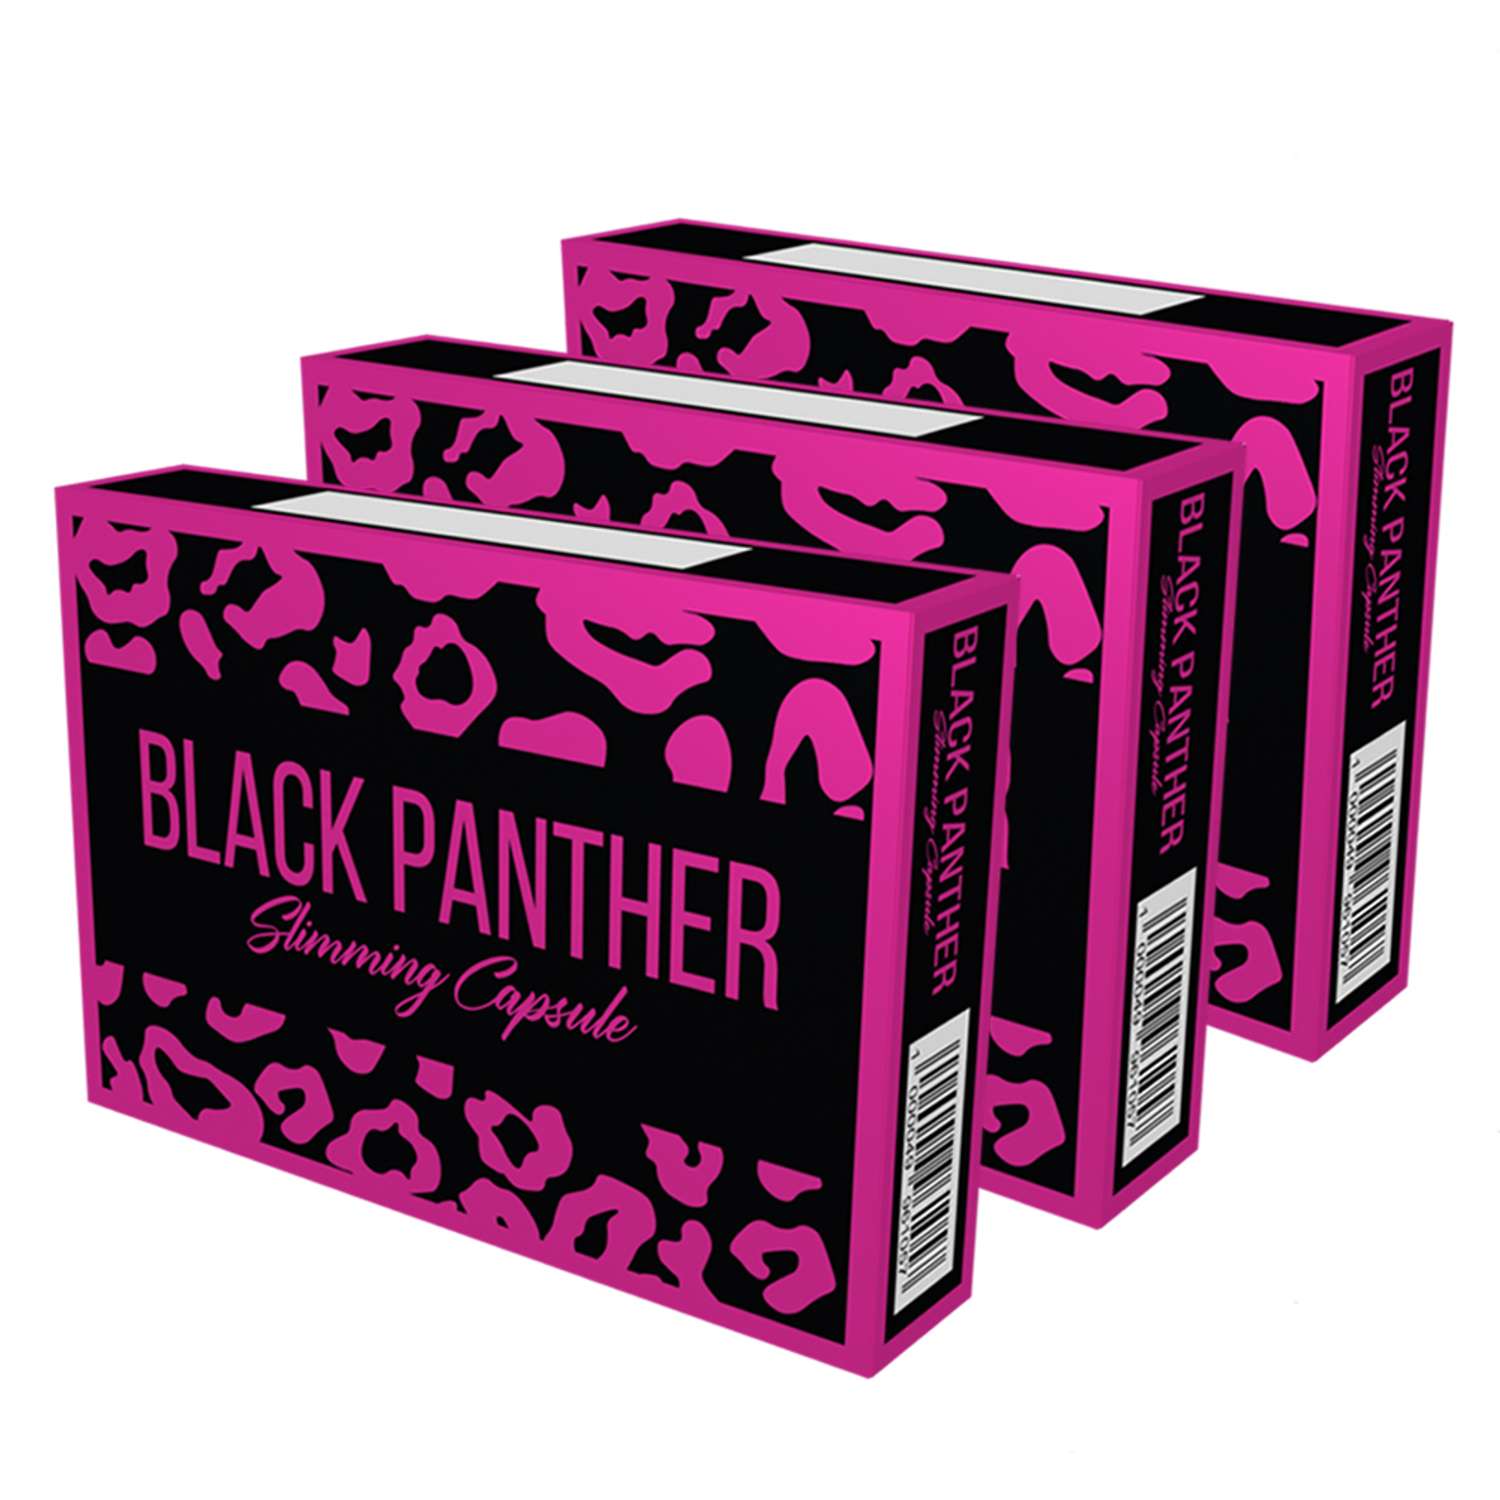 Черная пантера капсулы BLACK PANTHER для похудения жиросжигатель набор 3 упаковки - фото 1